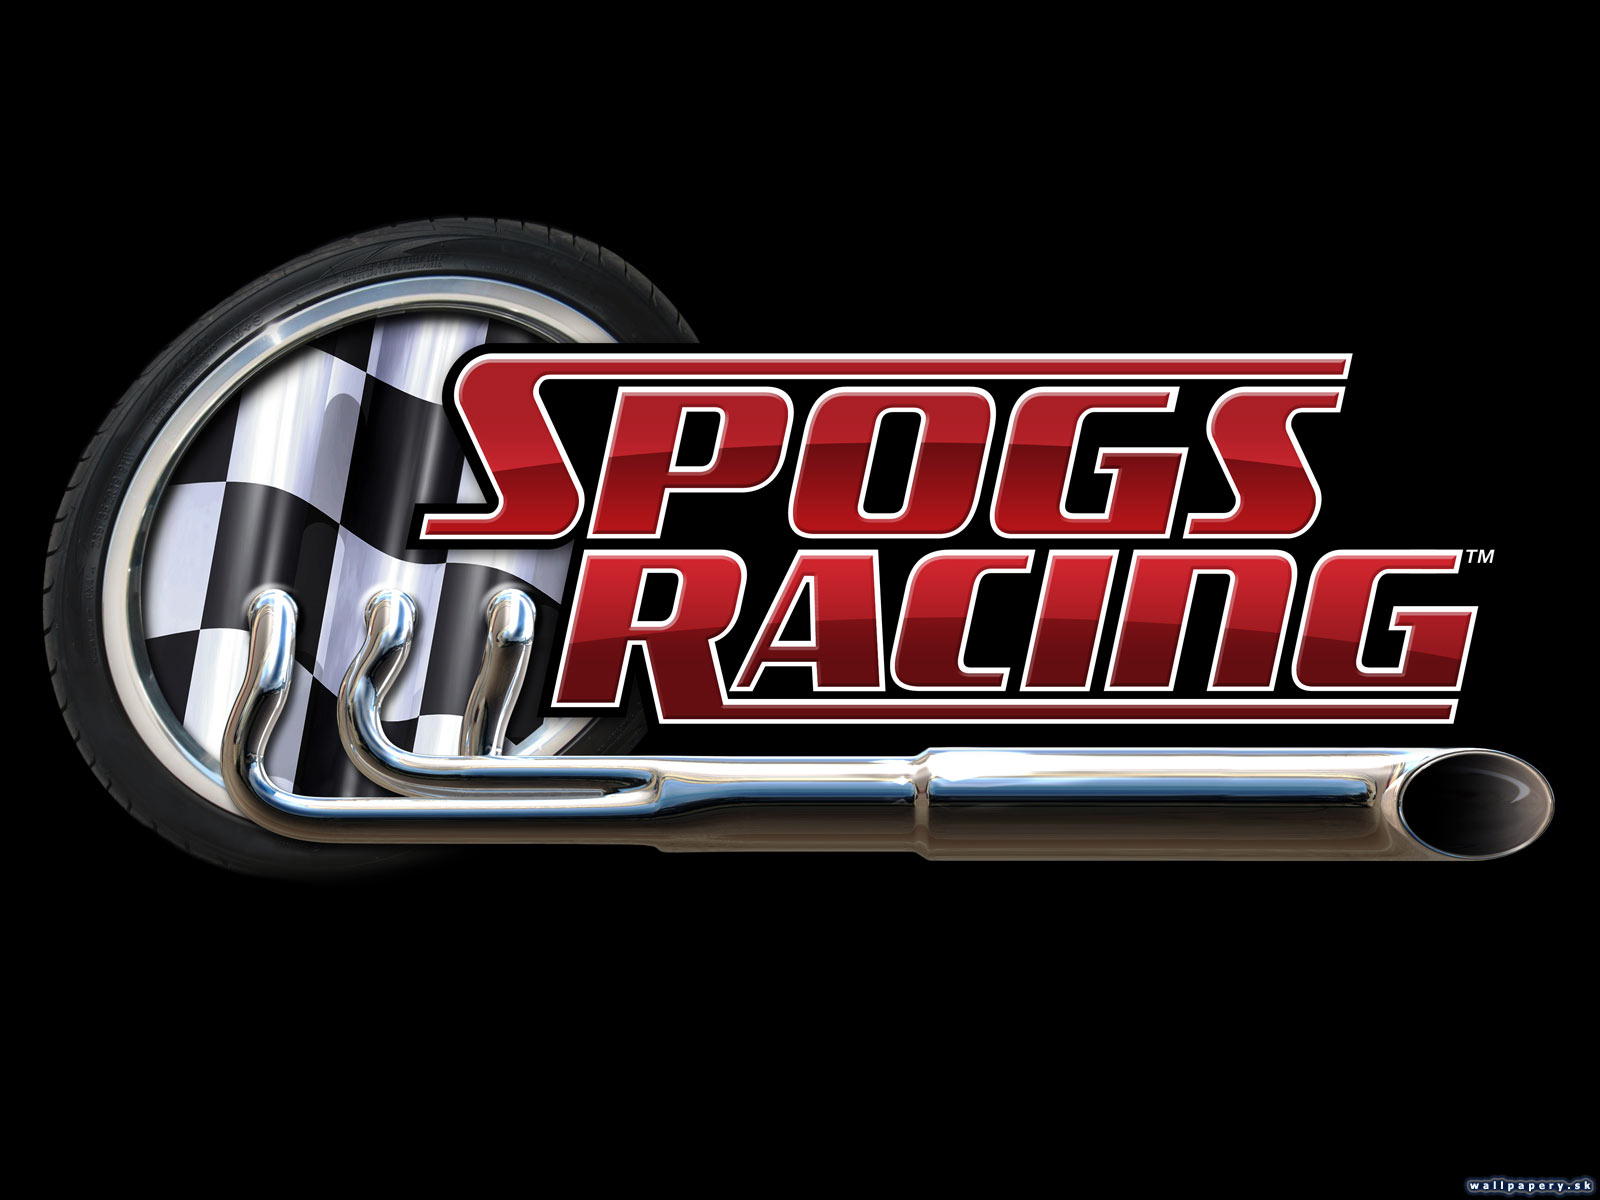 SPOGS Racing - wallpaper 1